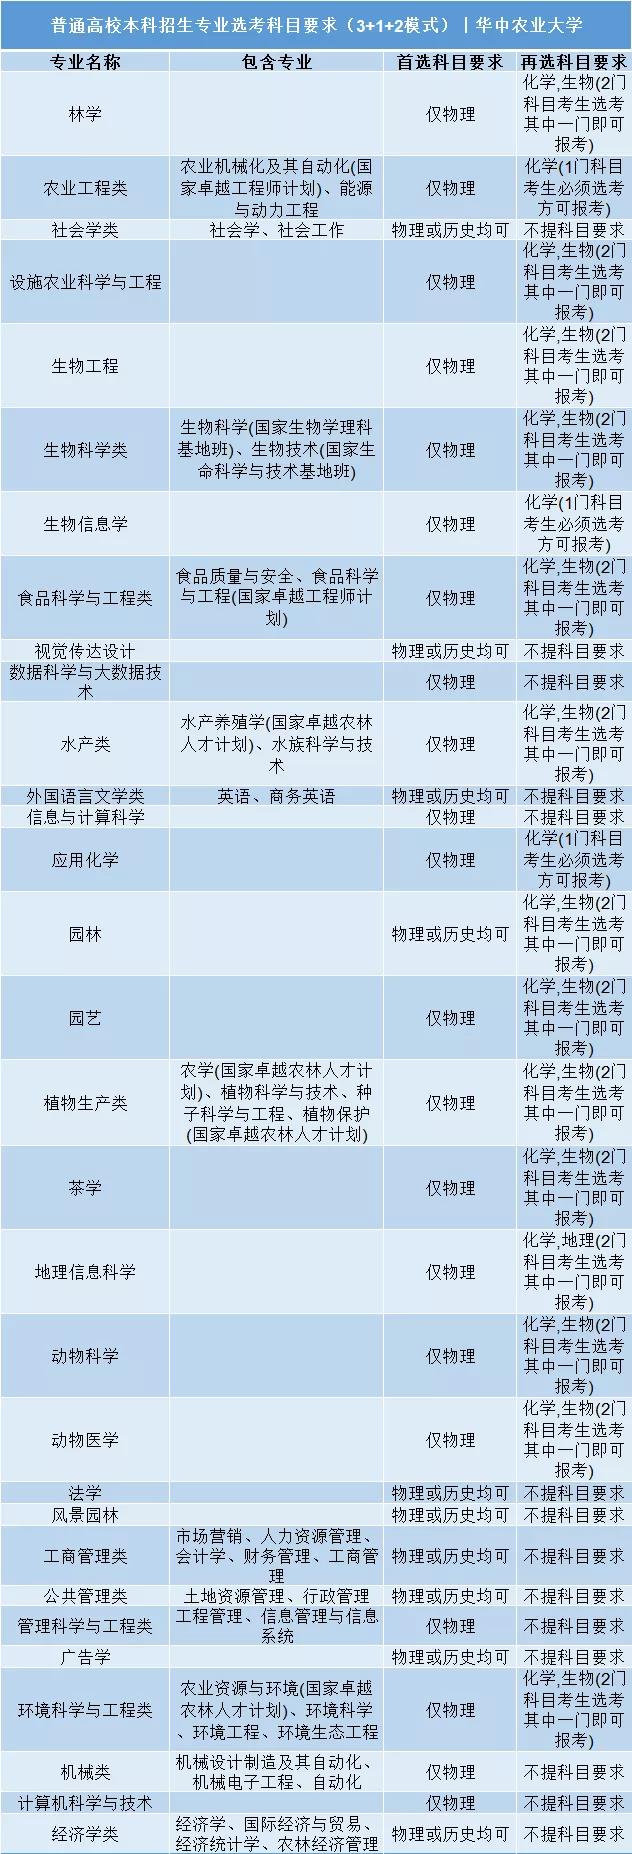 华中农业大学普通高校本科招生专业选考科目要求3+1+2模式